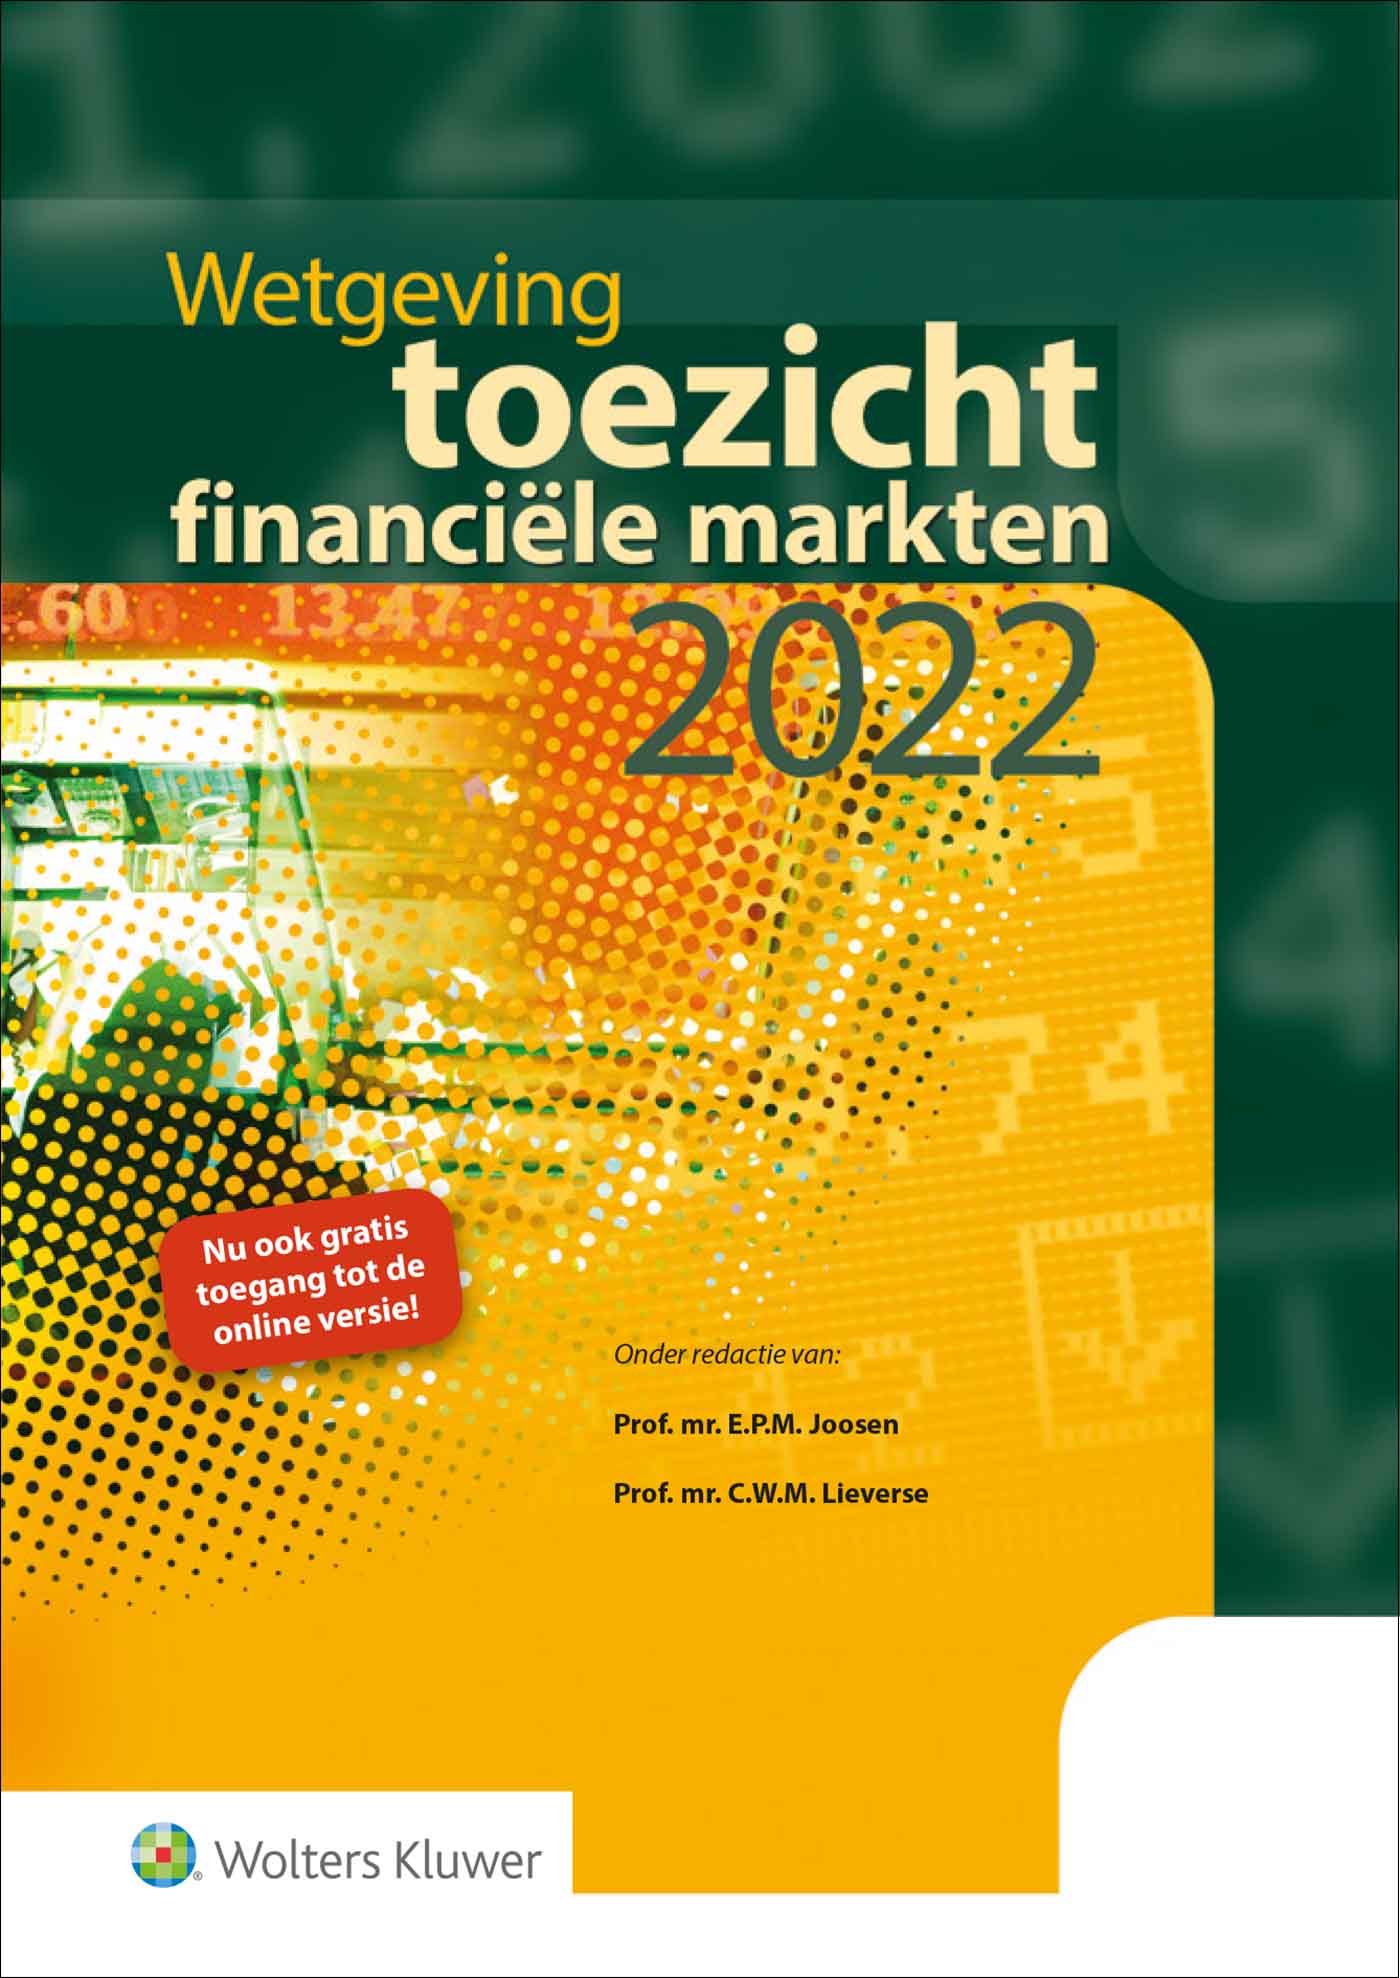 Wetgeving toezicht financiële markten 2021